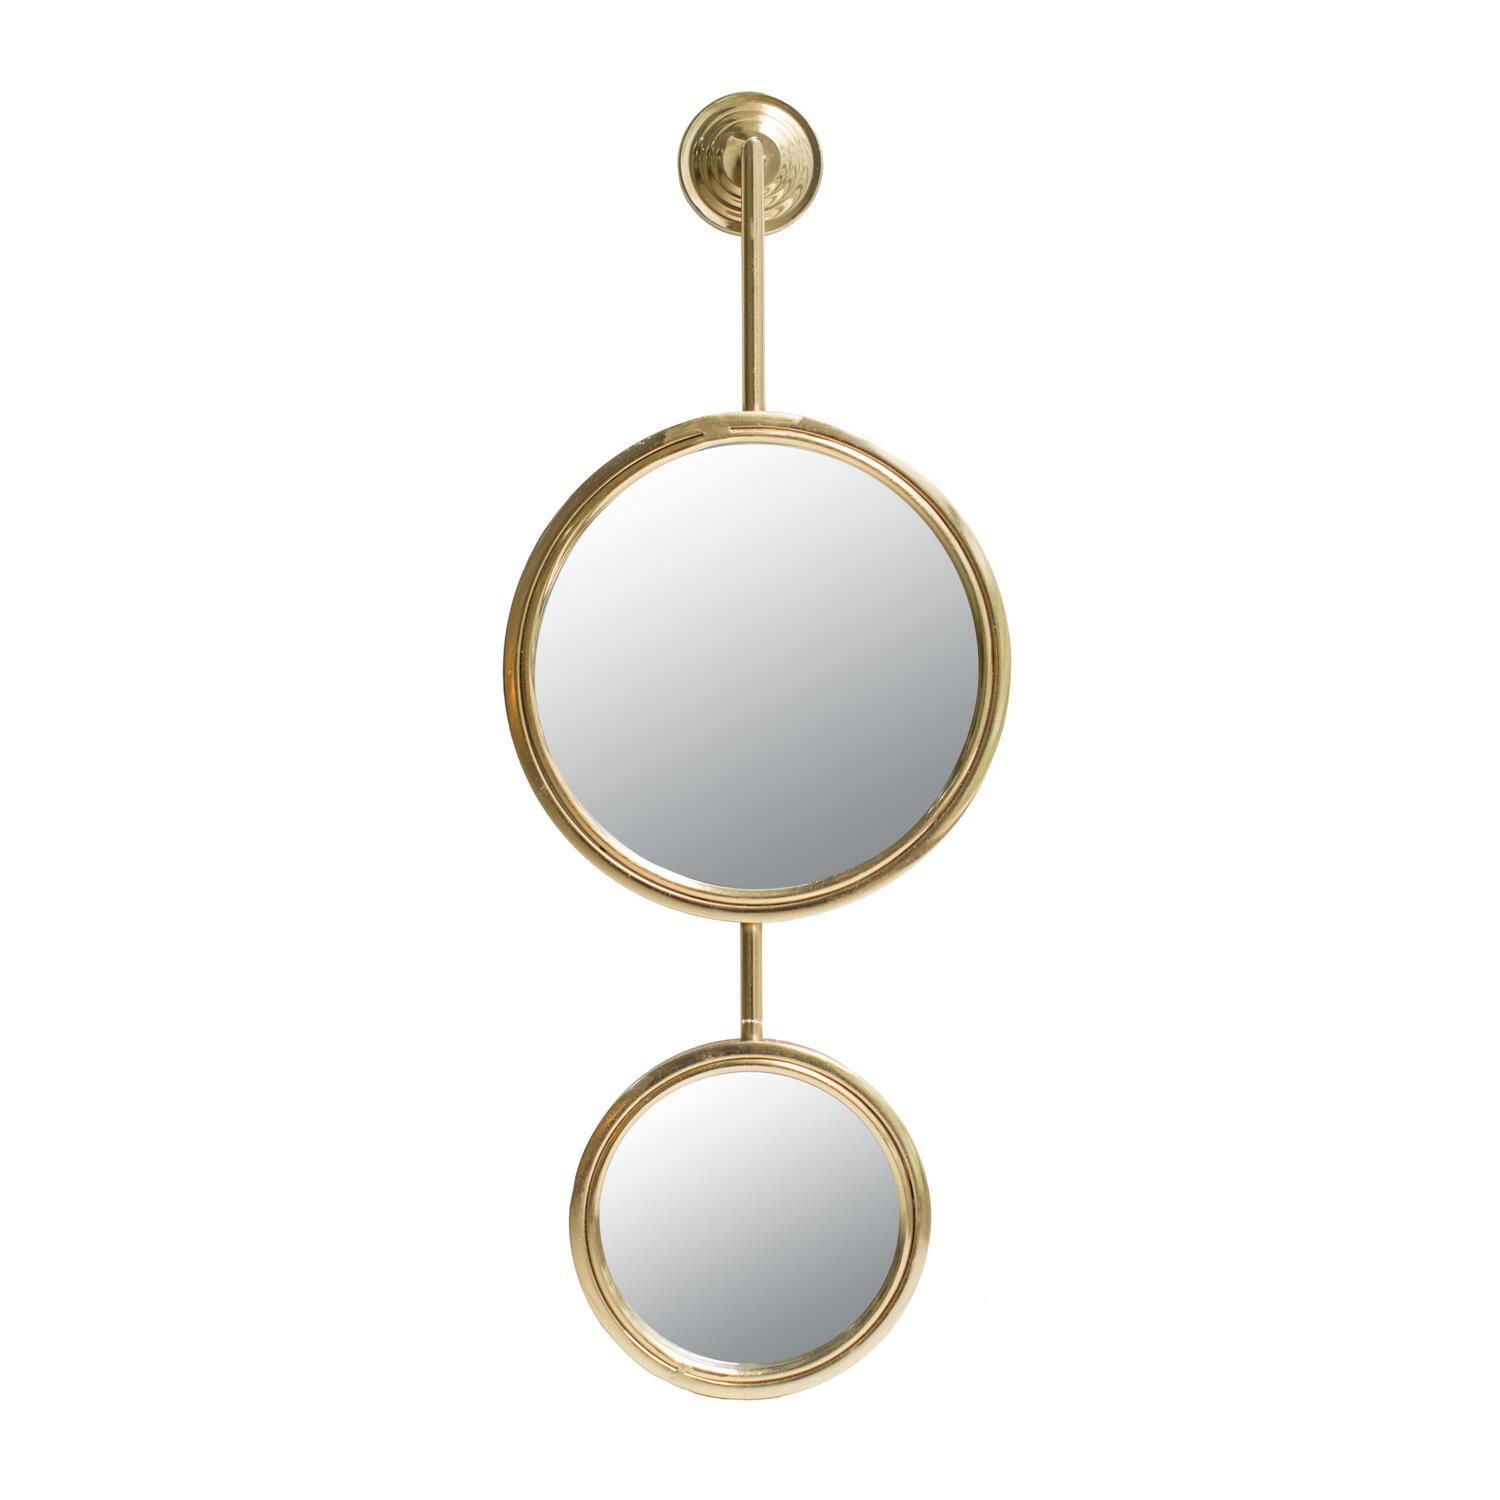 Elegant Gold Iron Dual Round Mirror with Sleek Frame